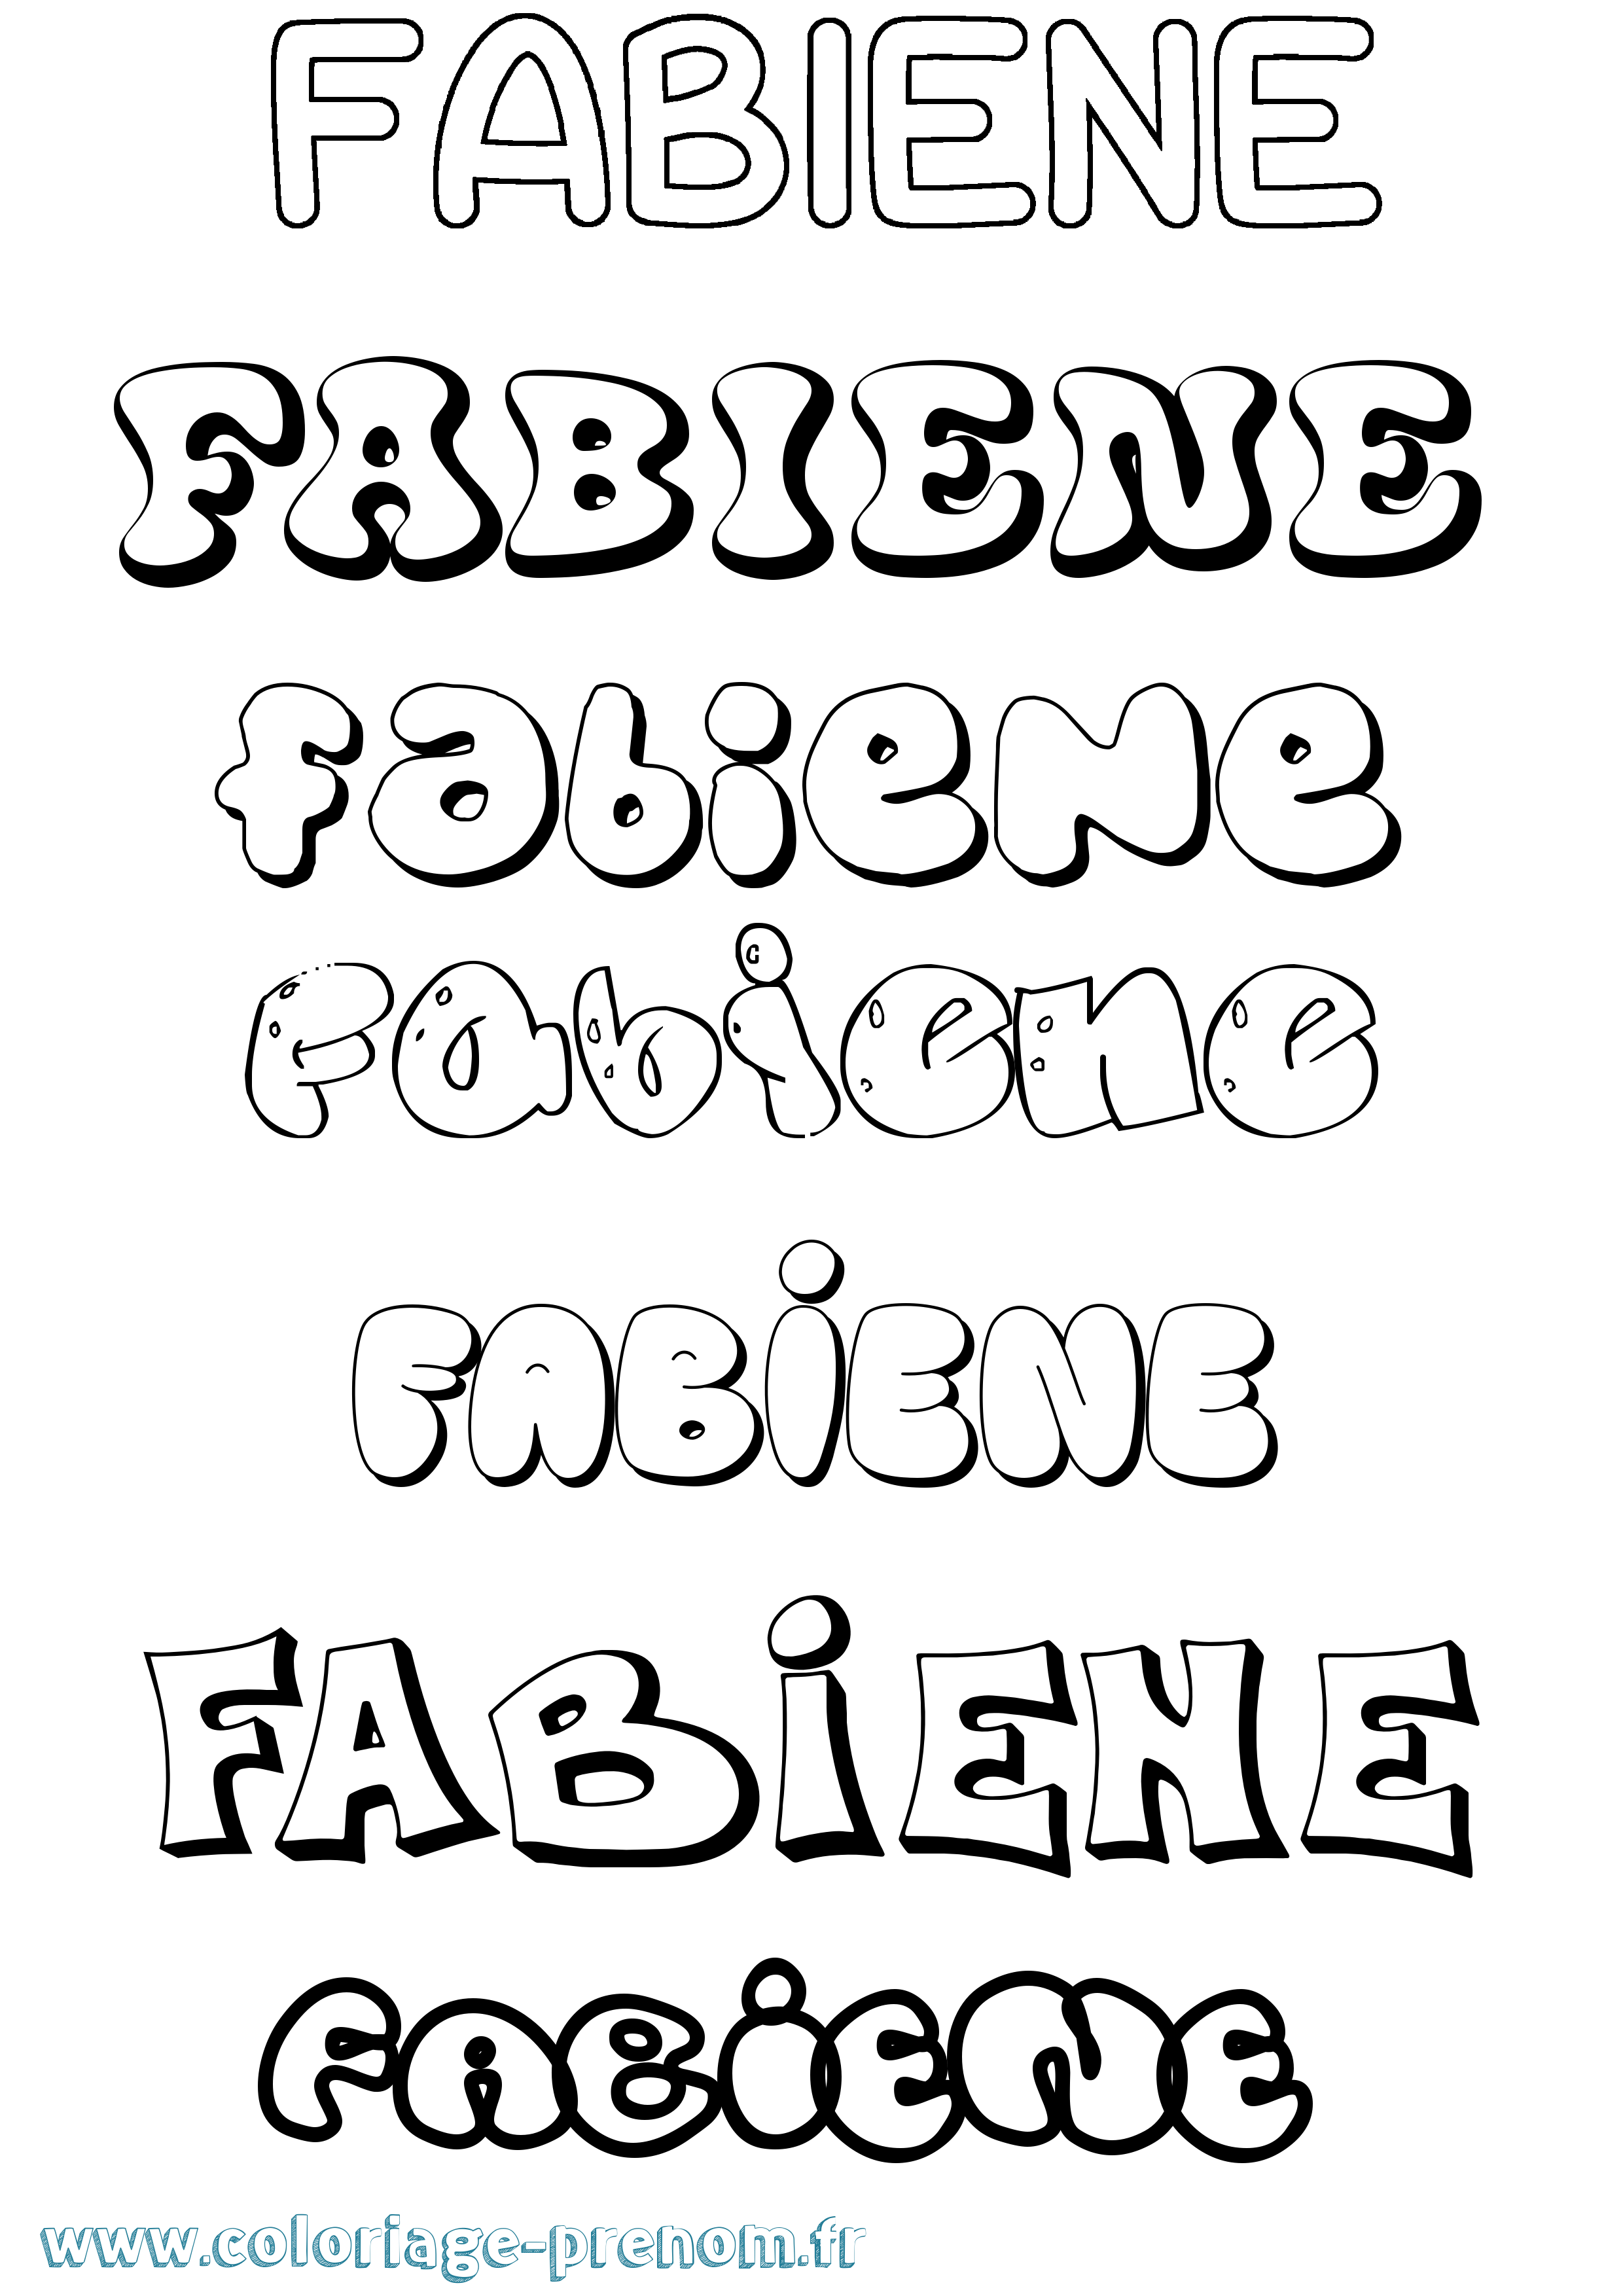 Coloriage prénom Fabiene Bubble